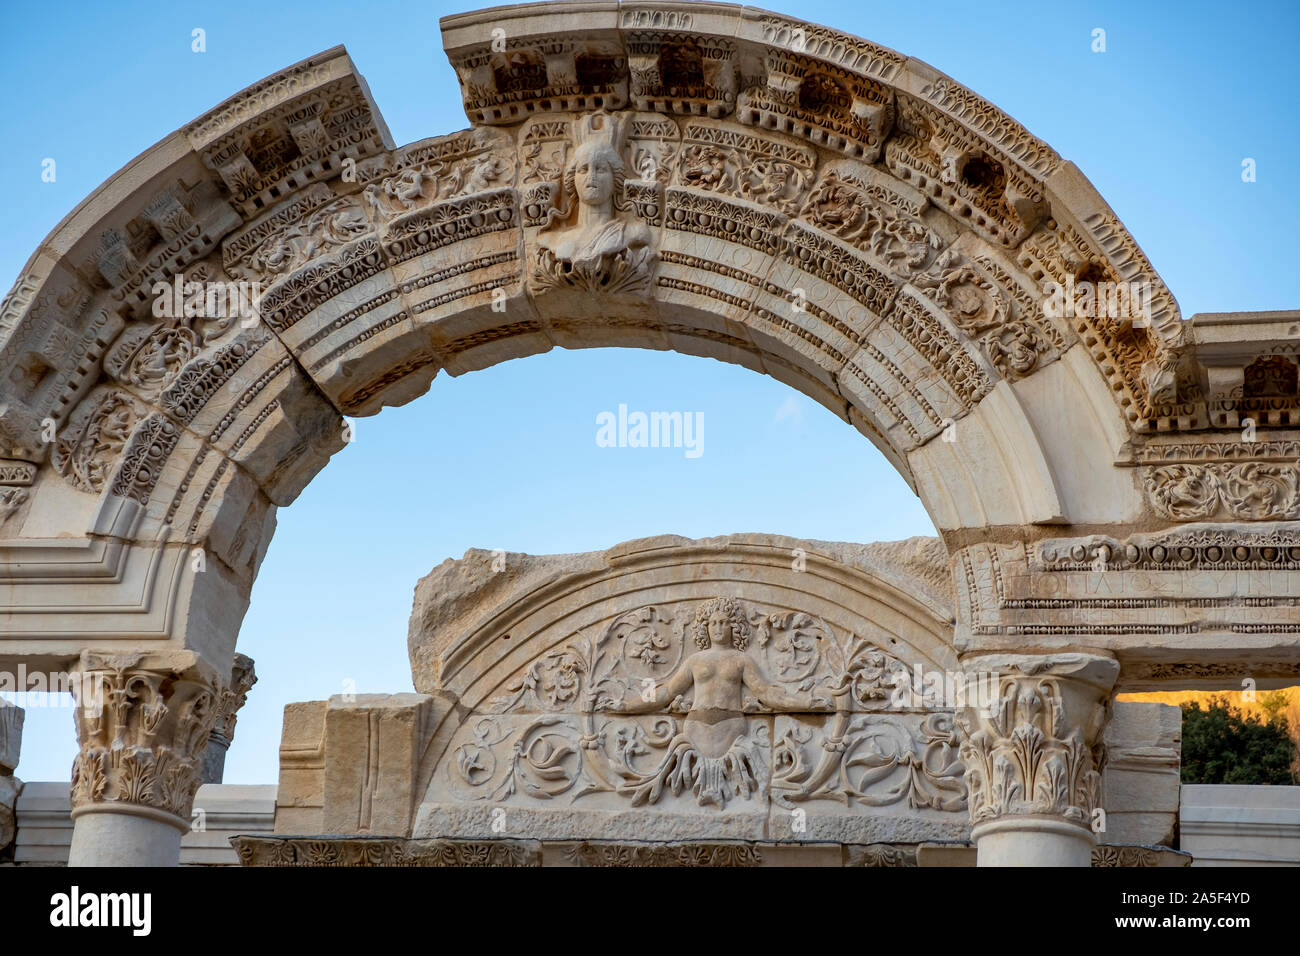 Éphèse, TURQUIE : reliefs de marbre à Éphèse, ancienne ville historique à Selcuk, Izmir, Turquie.La figure de Méduse avec des ornements de feuilles d'acanthe. Banque D'Images